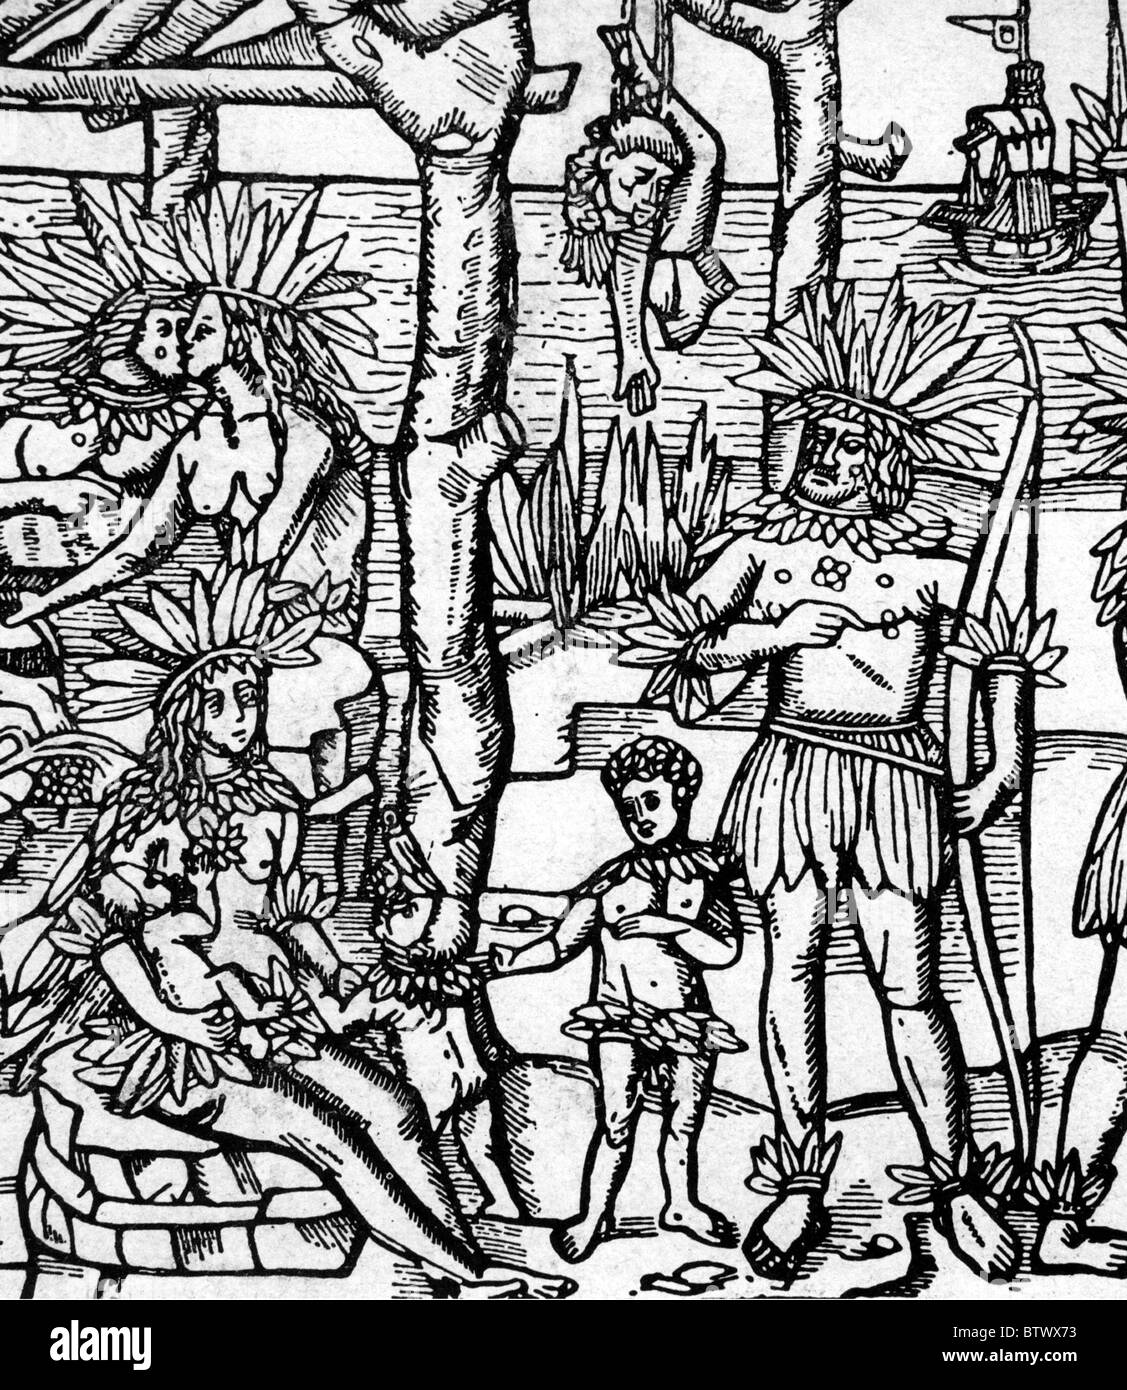 GIOVANNI DA VERRAZZANO (1485-1528) esploratore spagnolo che è stato ucciso e mangiato dagli indiani caraibici in Guadalupa Foto Stock